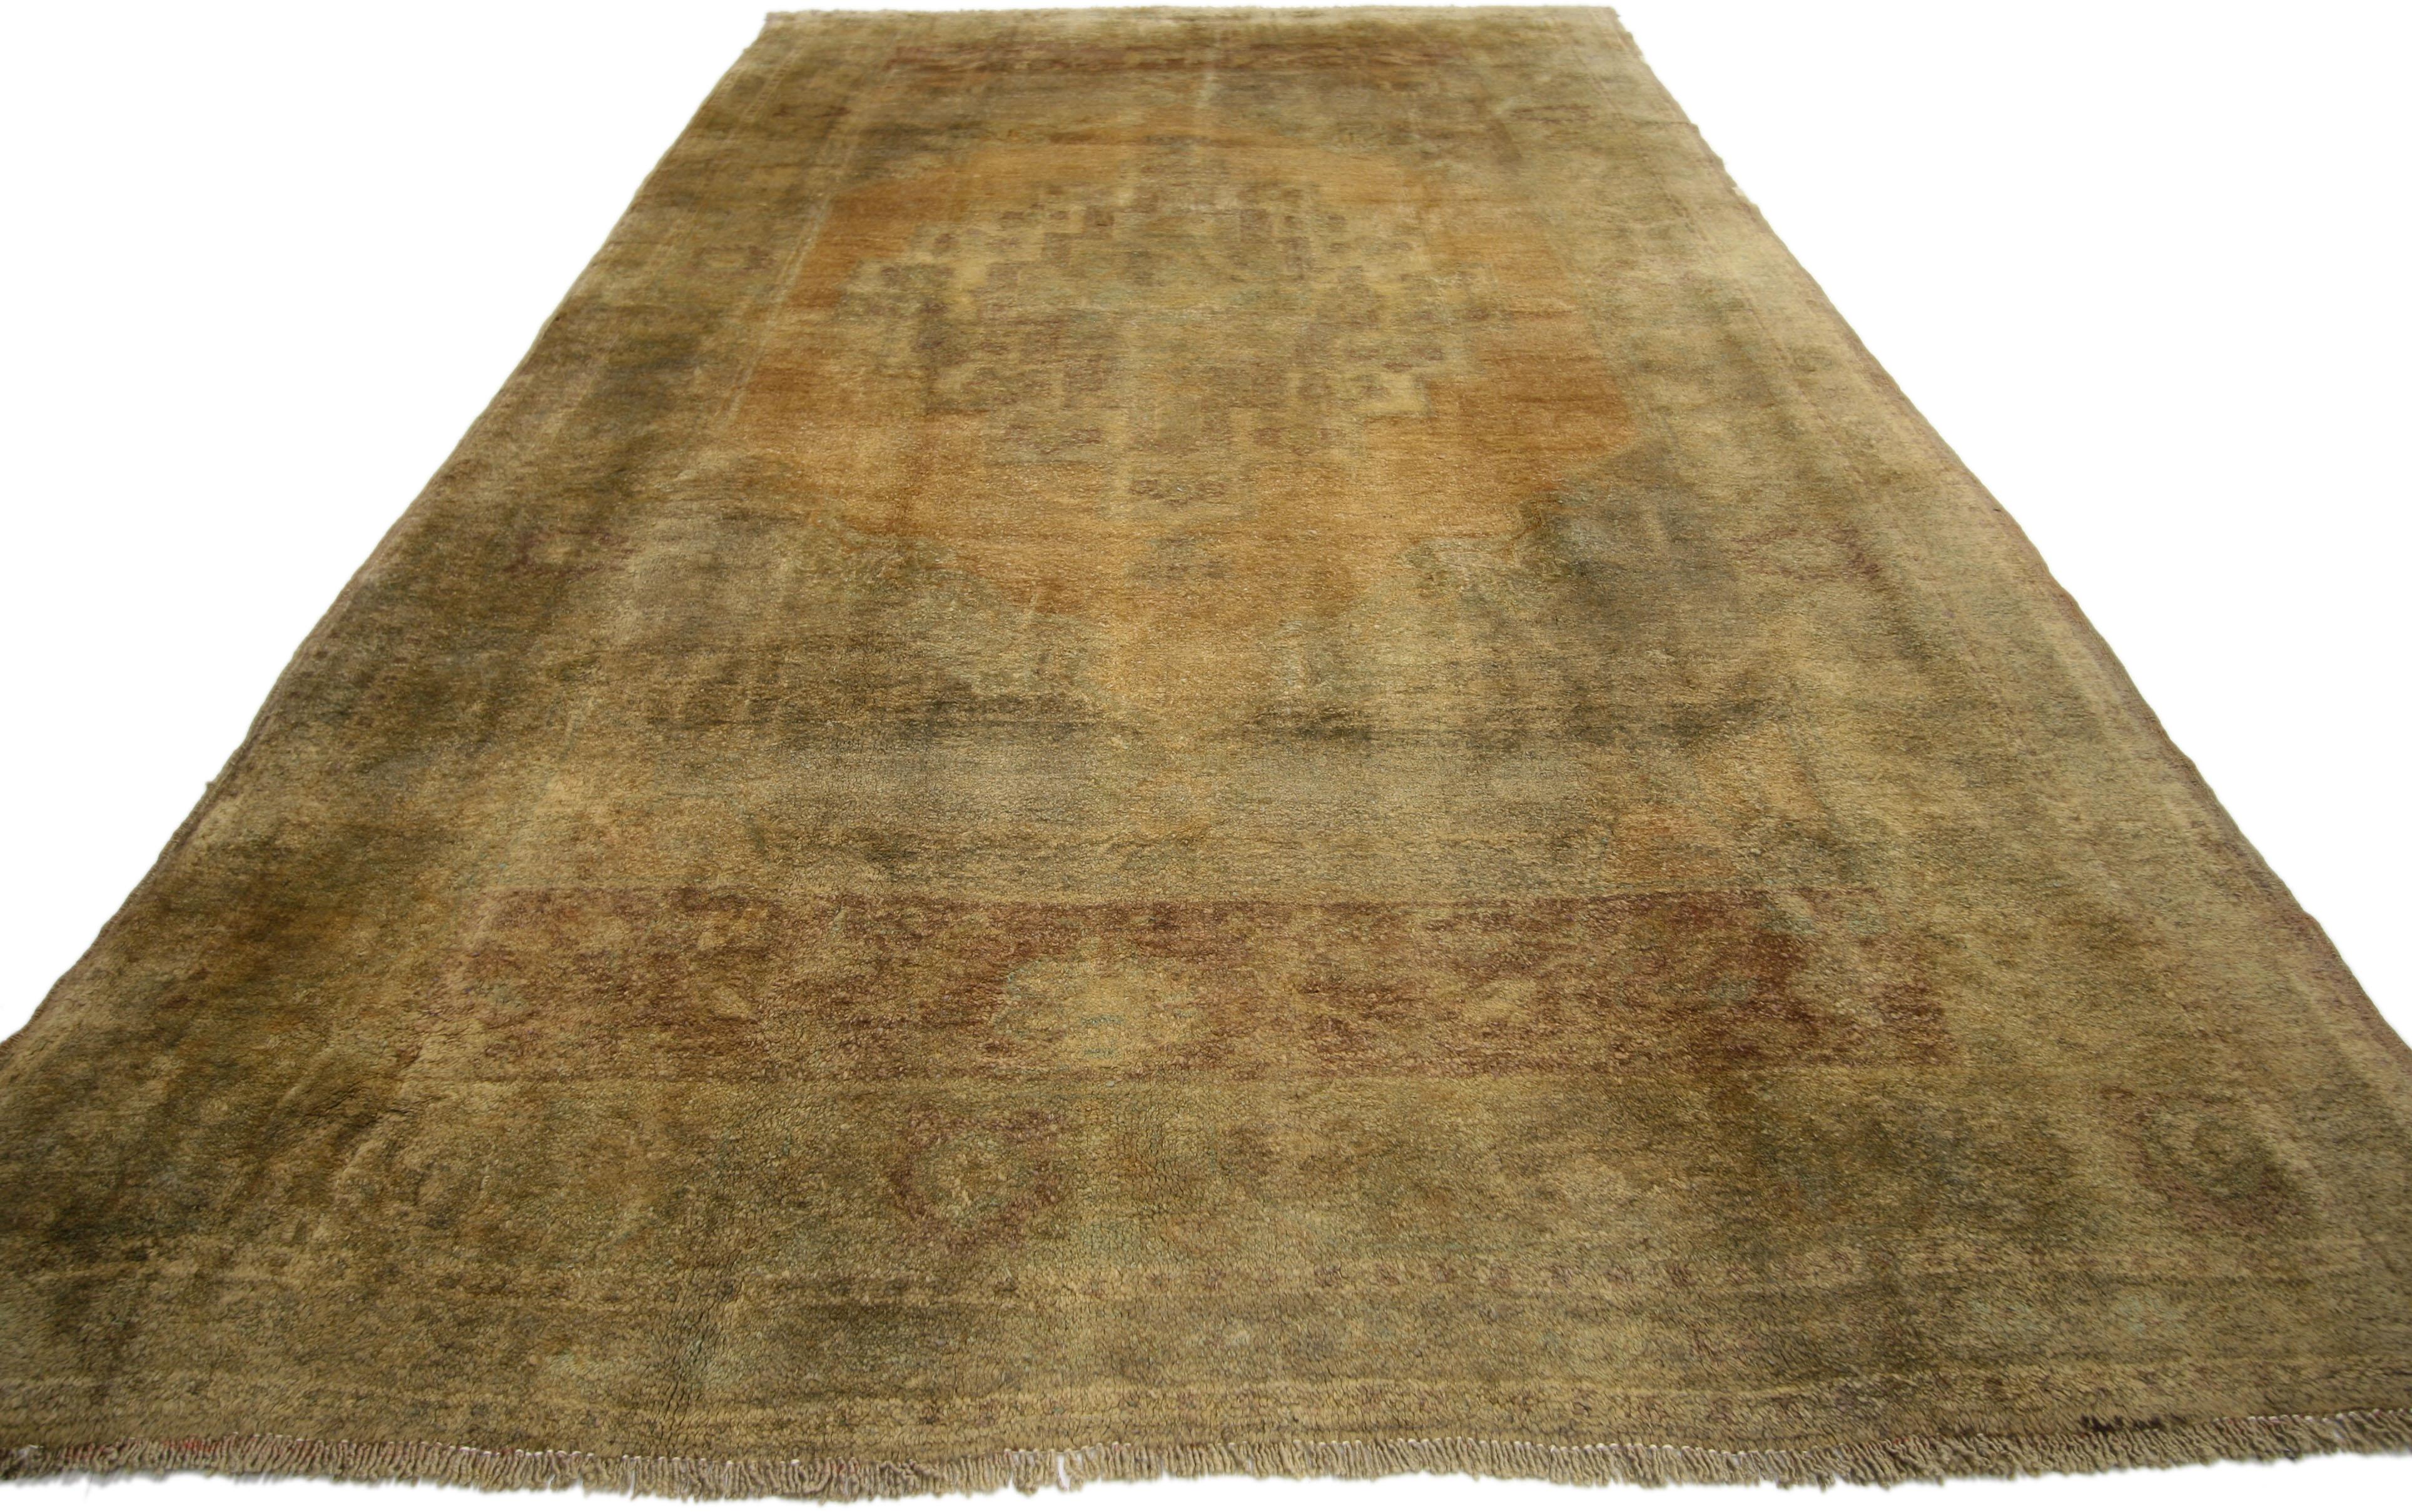 74106, tapis turc Oushak vintage de style Mission et aux tons chauds de la terre. Ce tapis galerie turc vintage en laine noué à la main présente un médaillon central discret dans un champ de chameaux dorés abrasés. Il est entouré d'écoinçons neutres